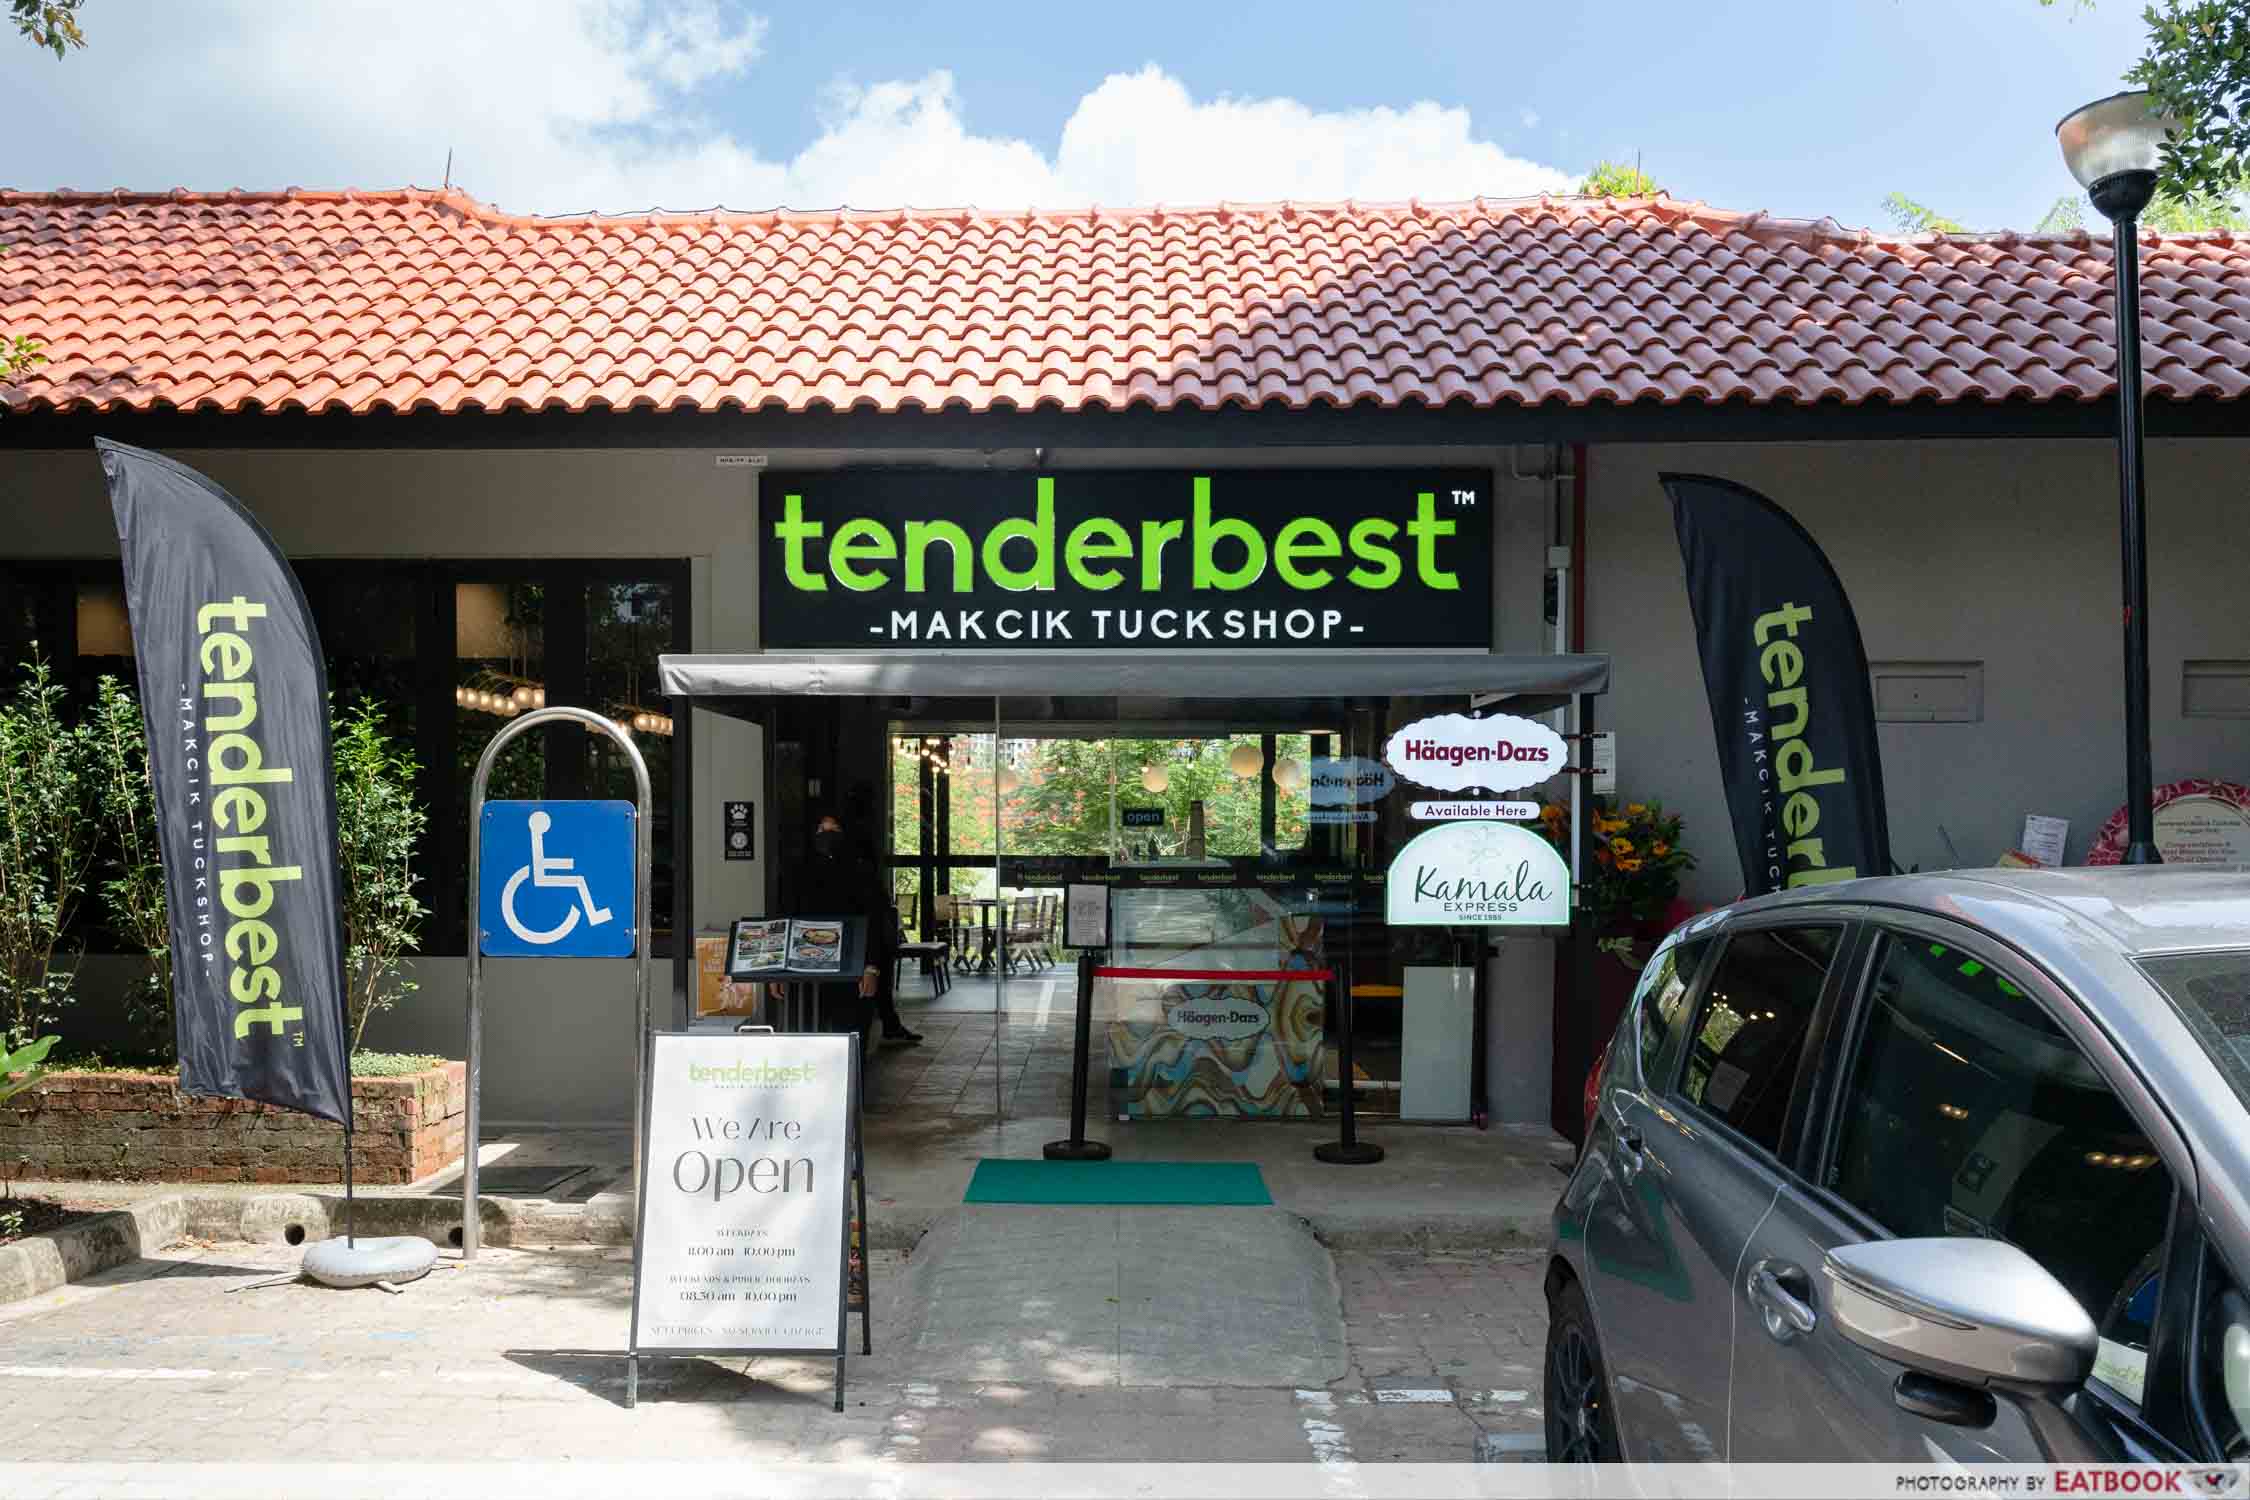 tenderbest-makcik-tuckshop-punggol-park-storefront